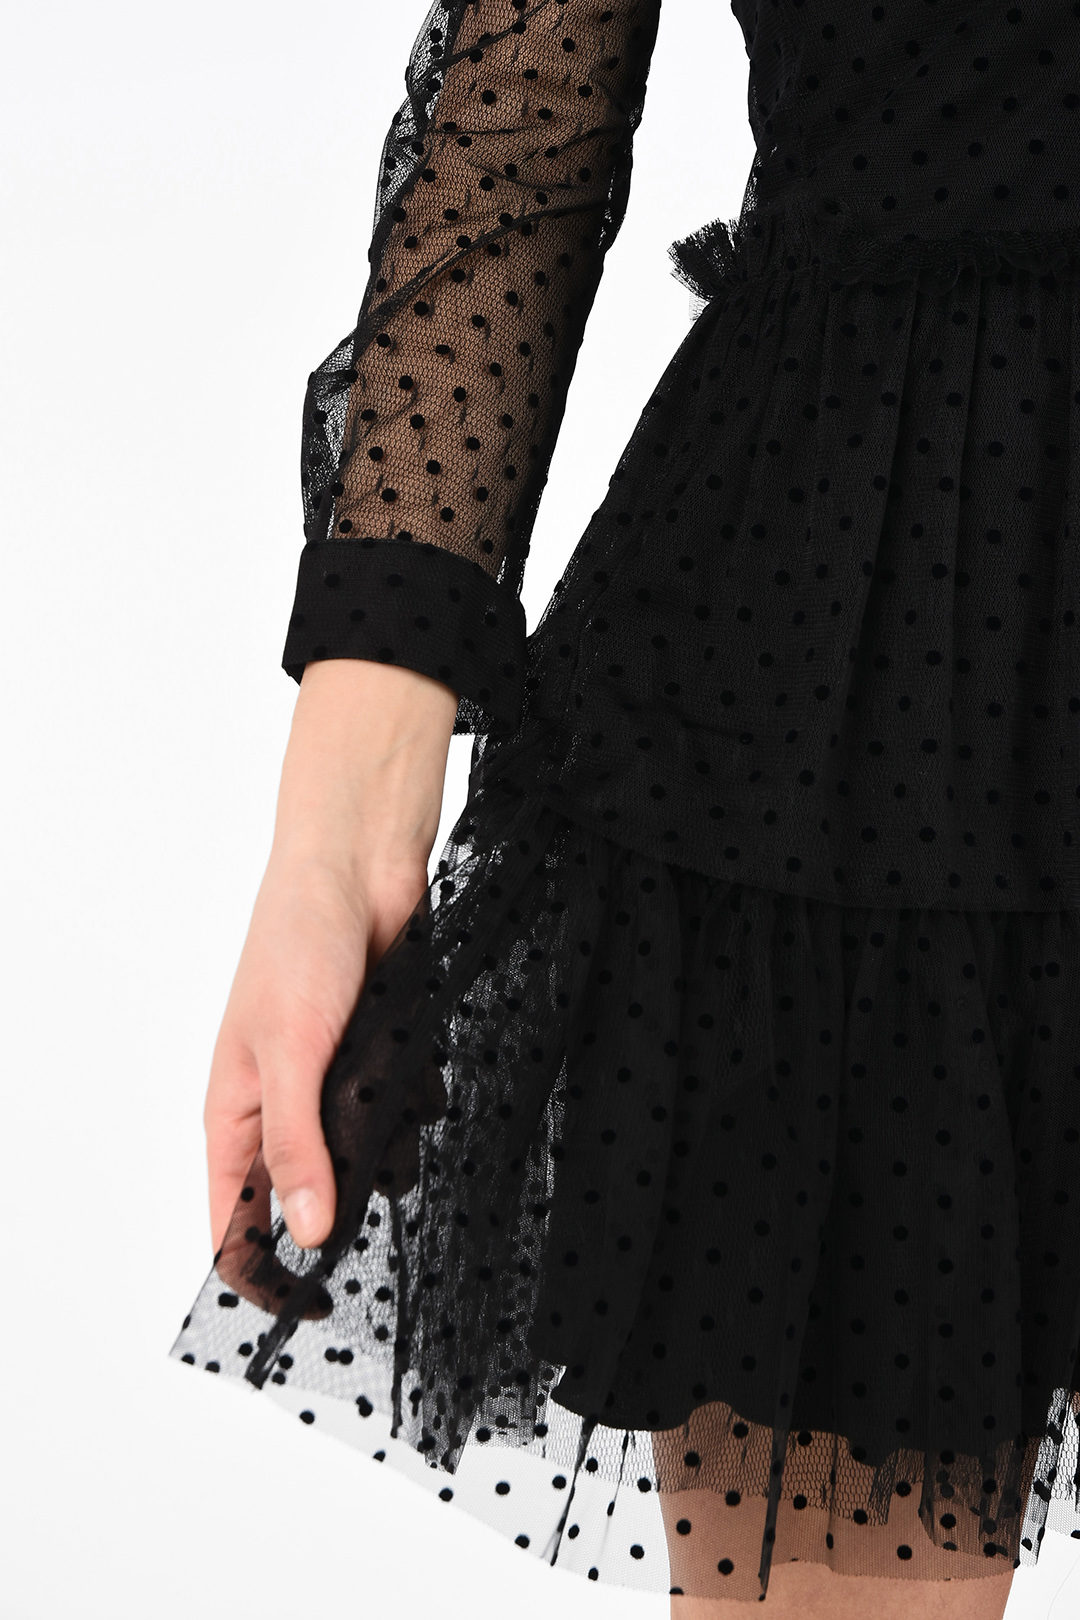 REDValentino Bow Detail Flocked Polka Dot Tulle Dress - Long And Midi  Dresses for Women